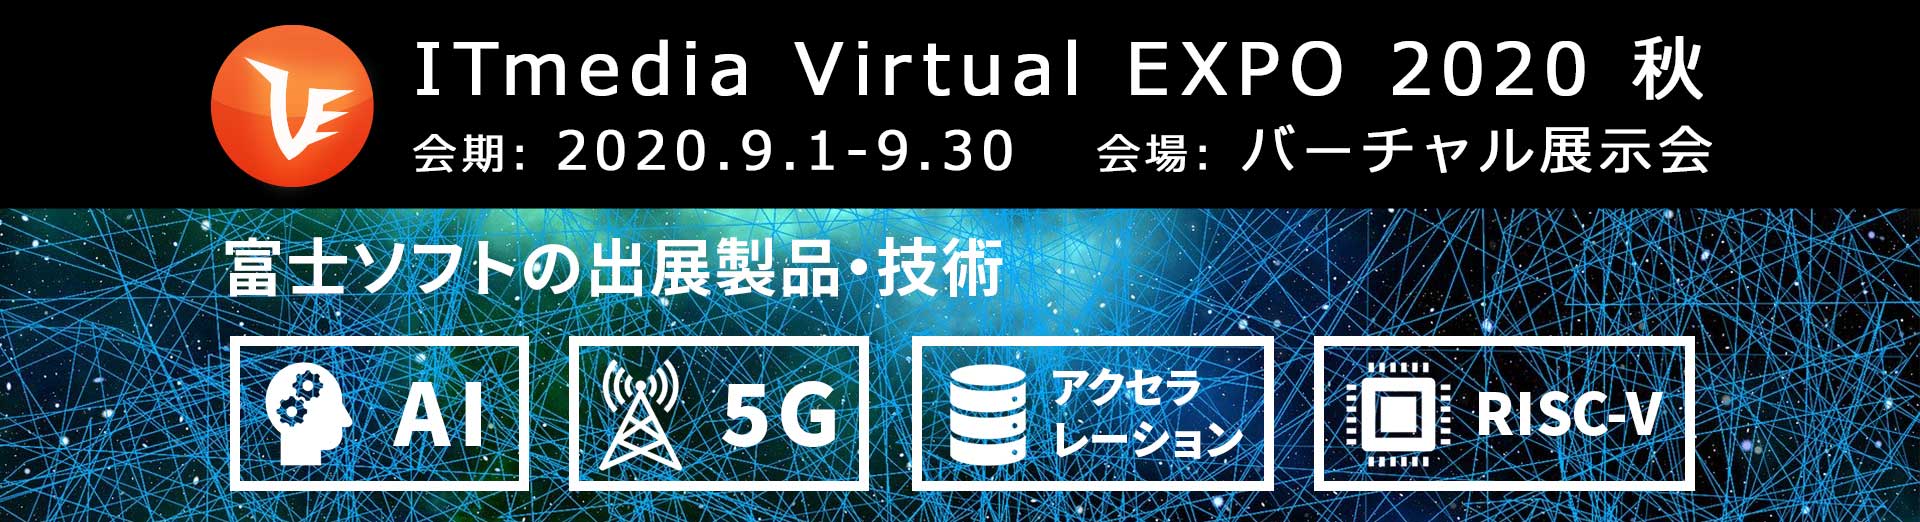 Virtual EXPO 2020